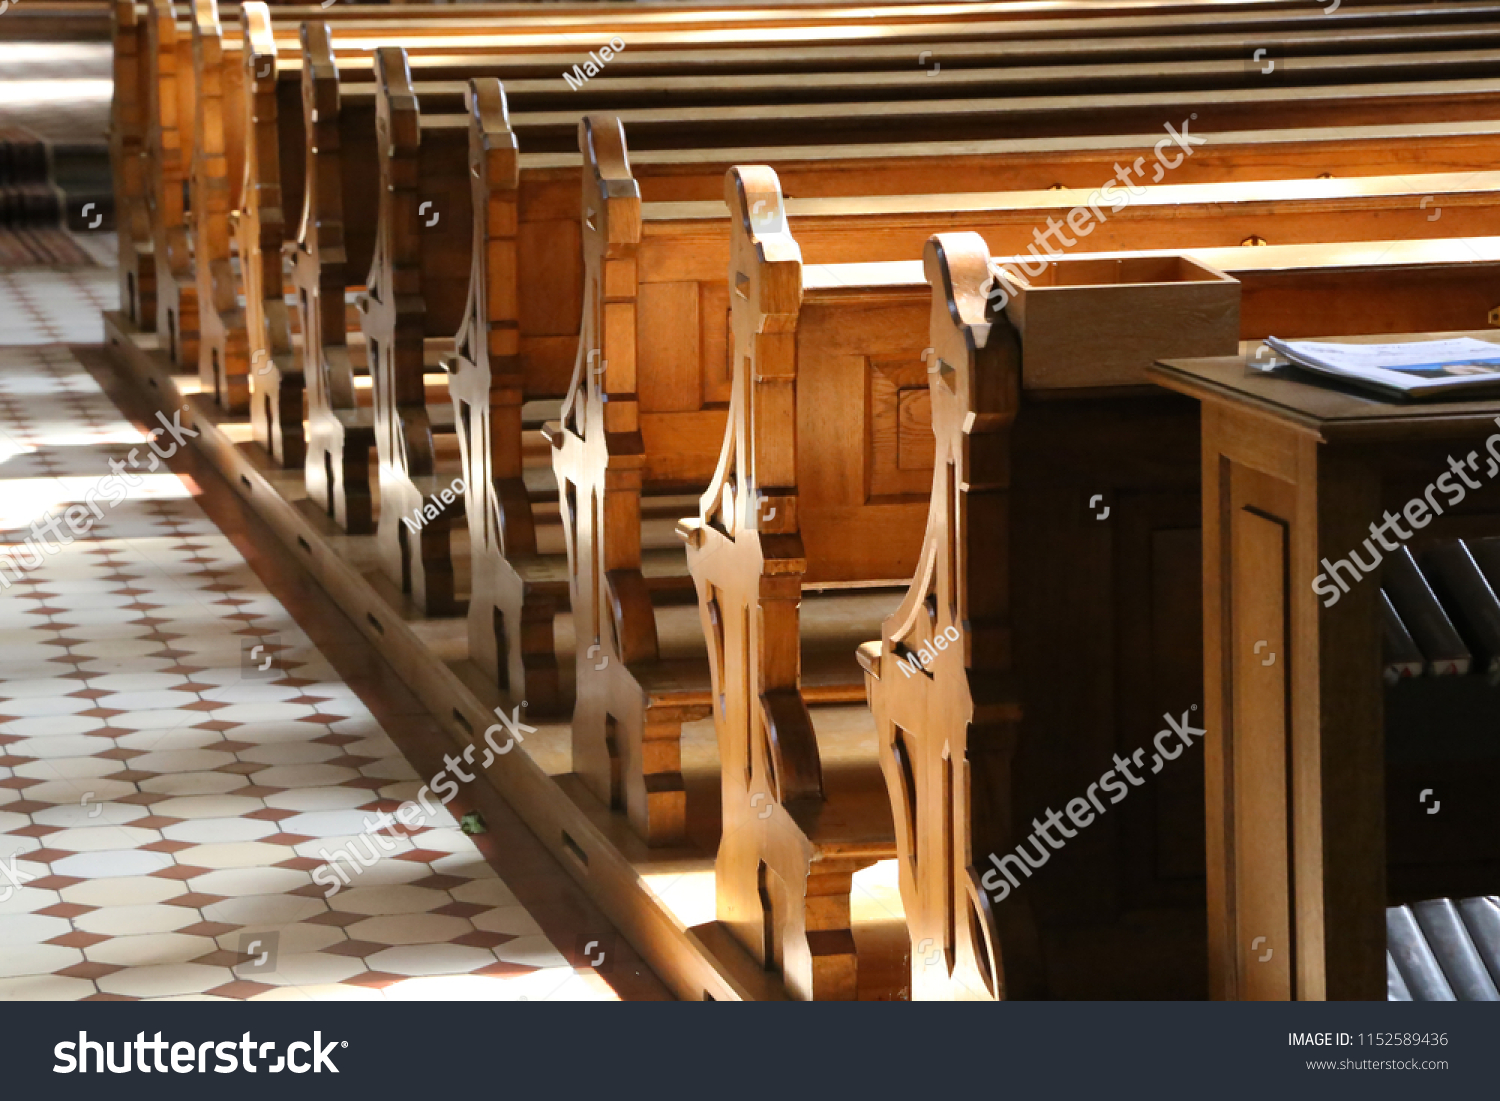 Church wooden bench